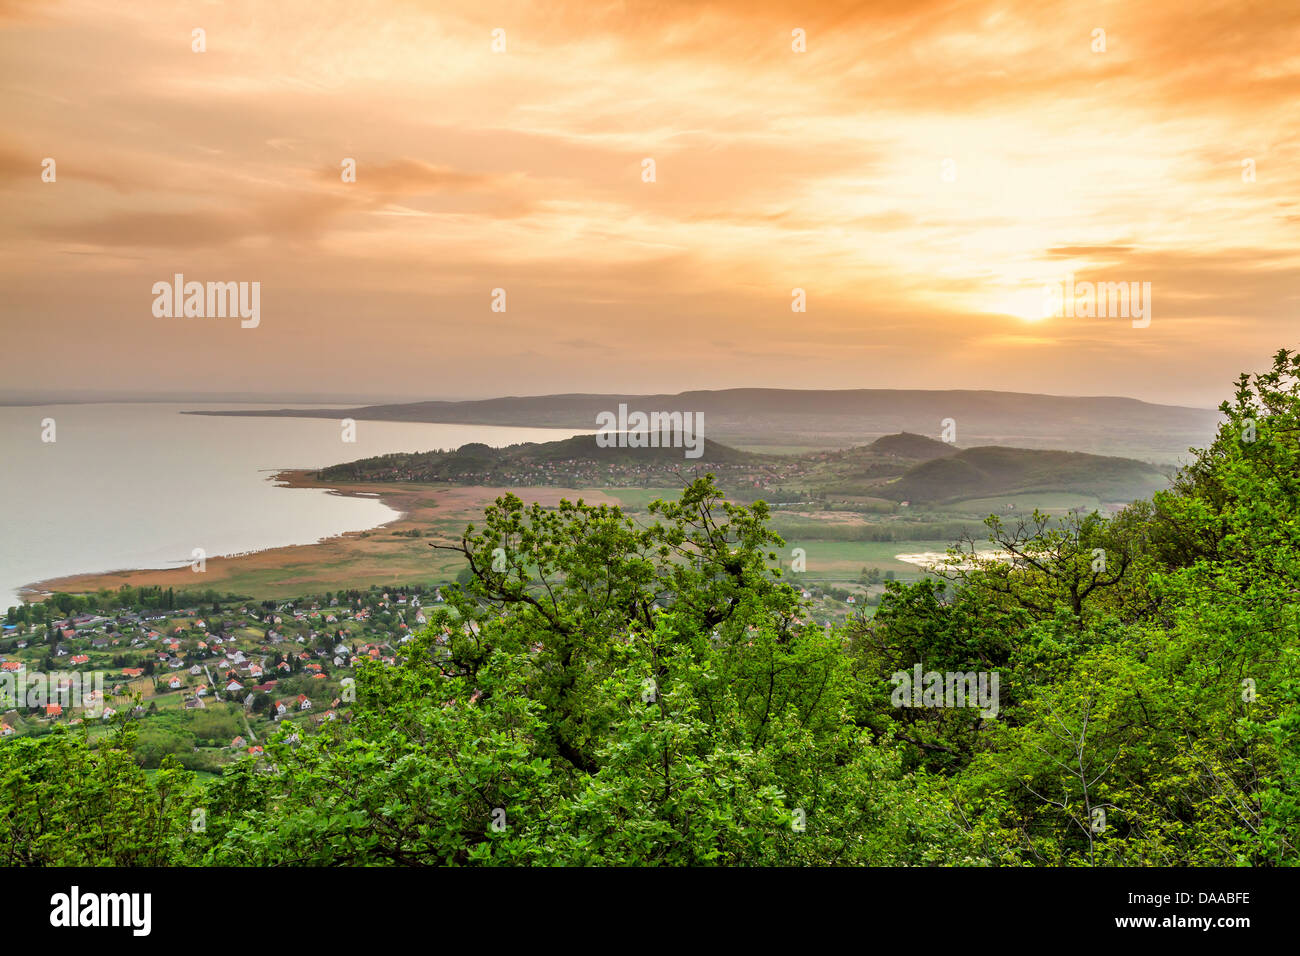 Landscape at lake Balaton, Szigliget, Hungary, Stock Photo